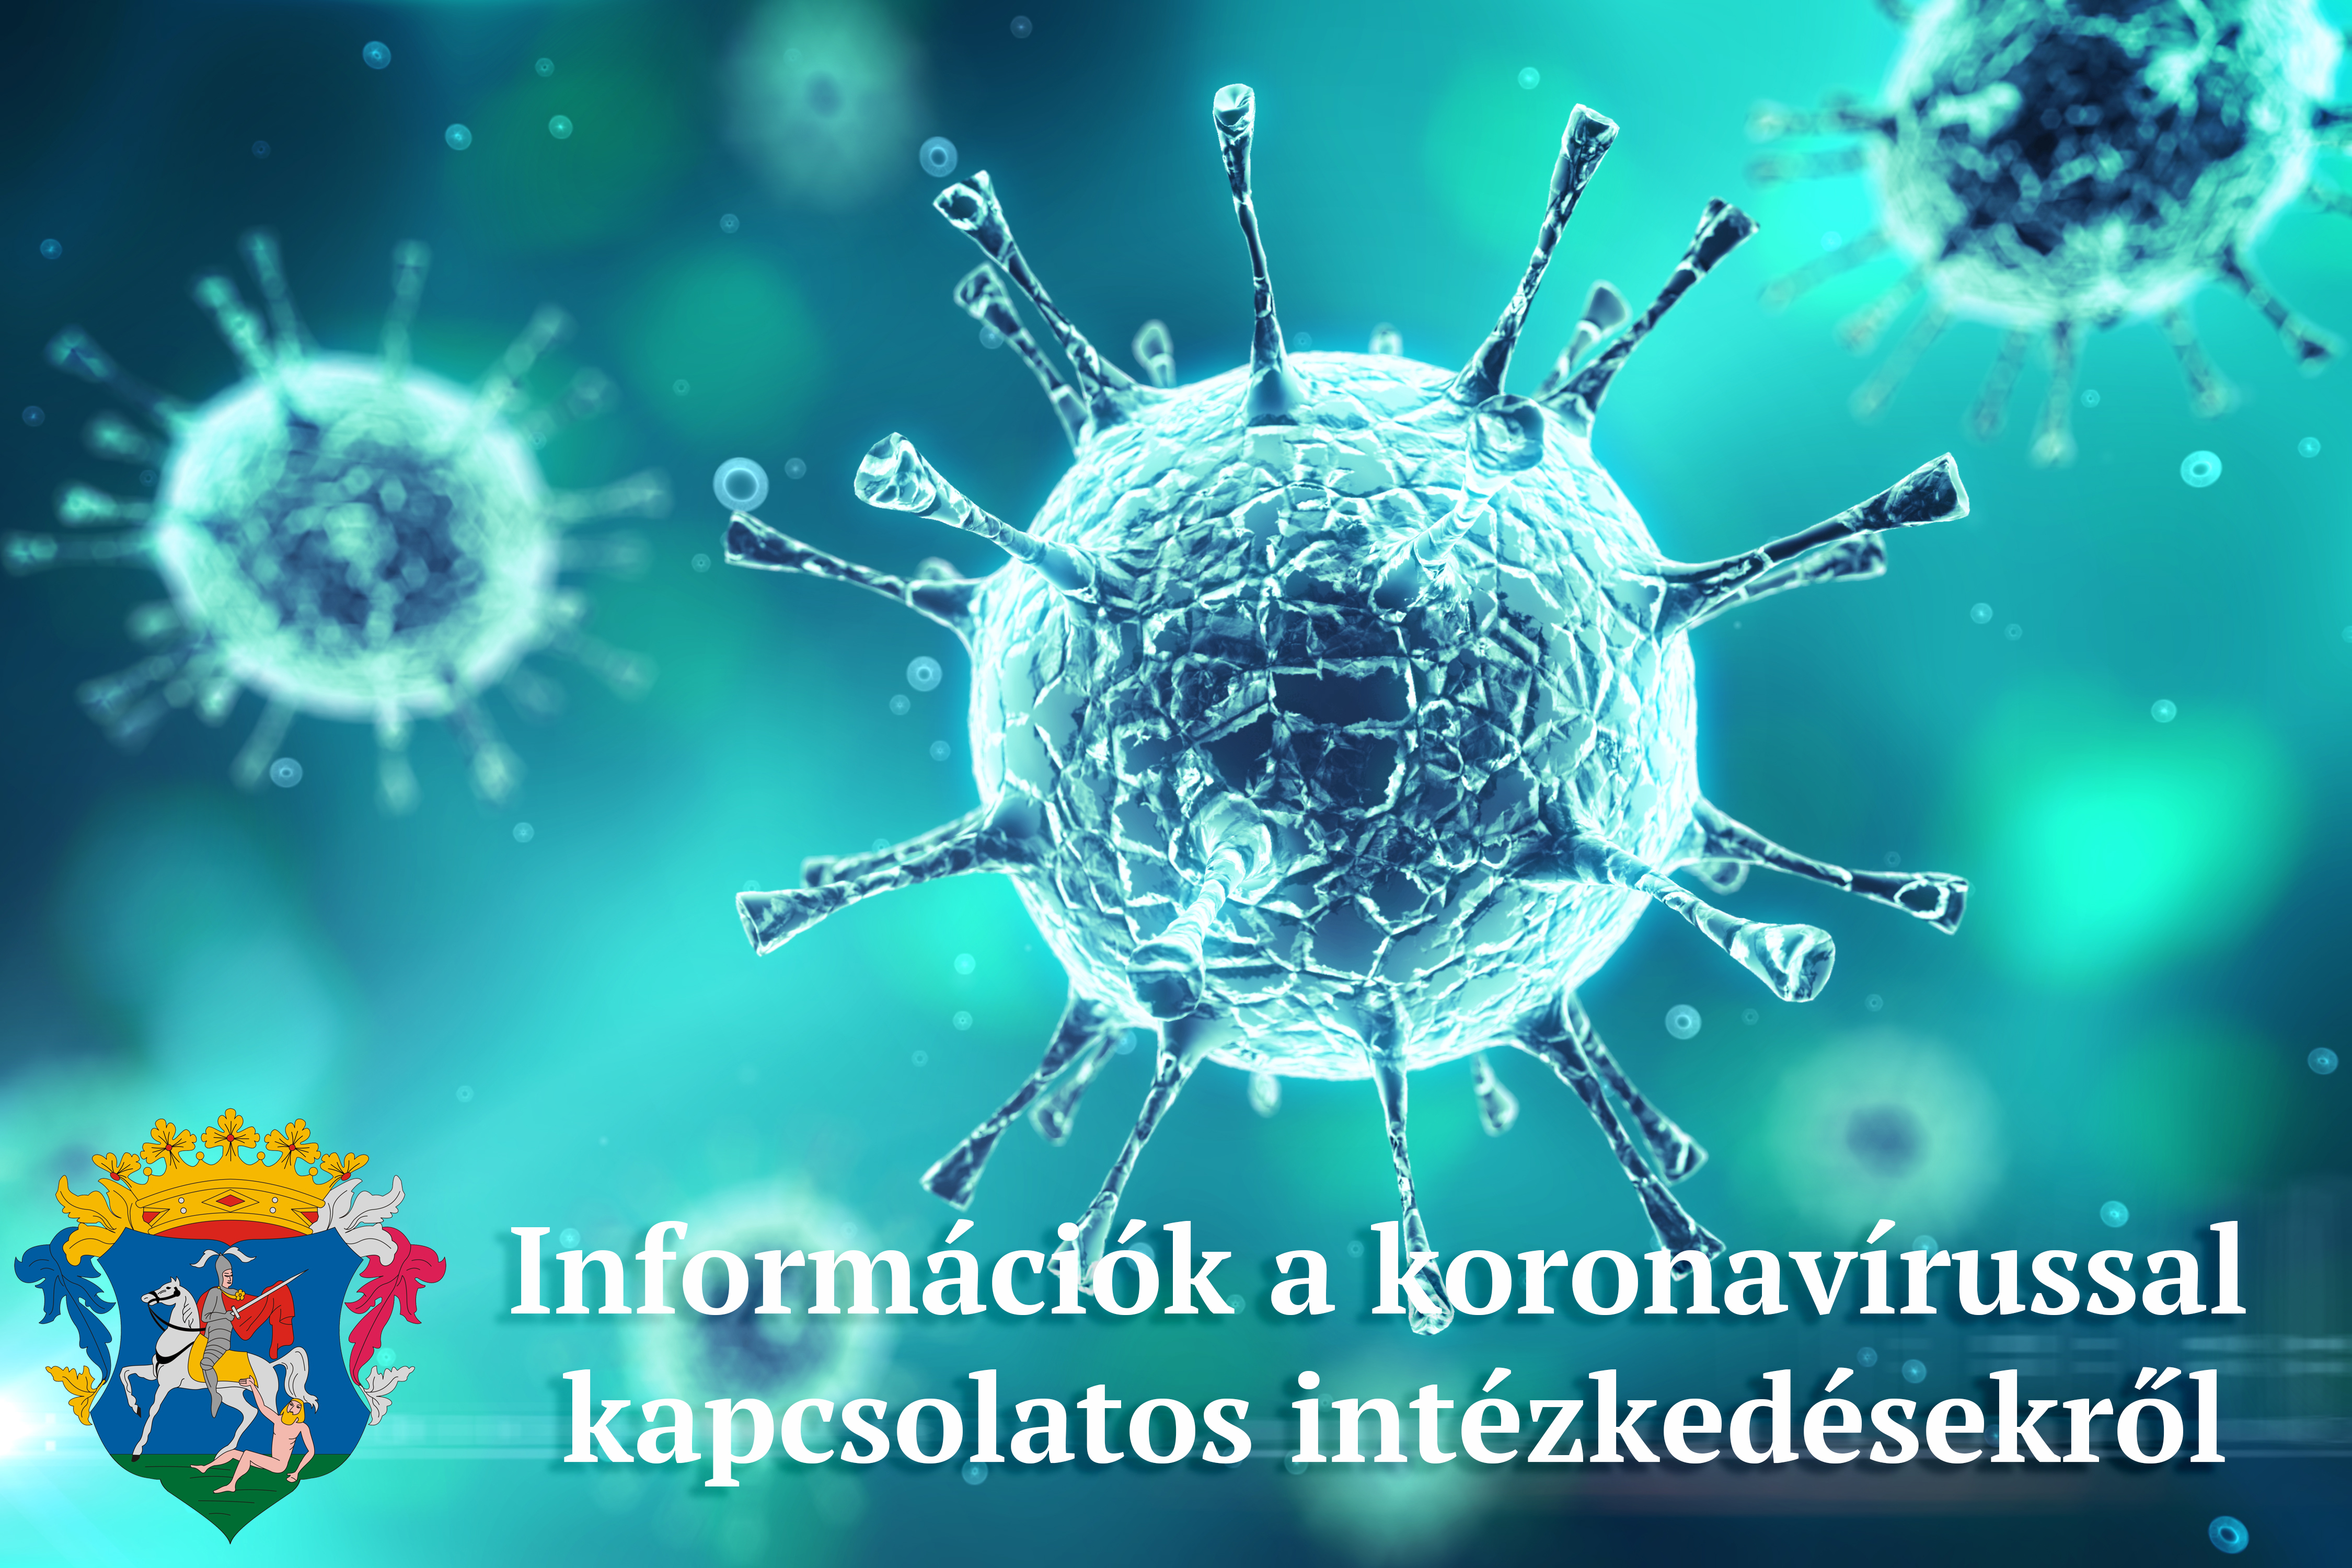 információk a koronavírussal kapcsolatos intézkedésekről, döntésekről 2020. november 30 és december 2 között